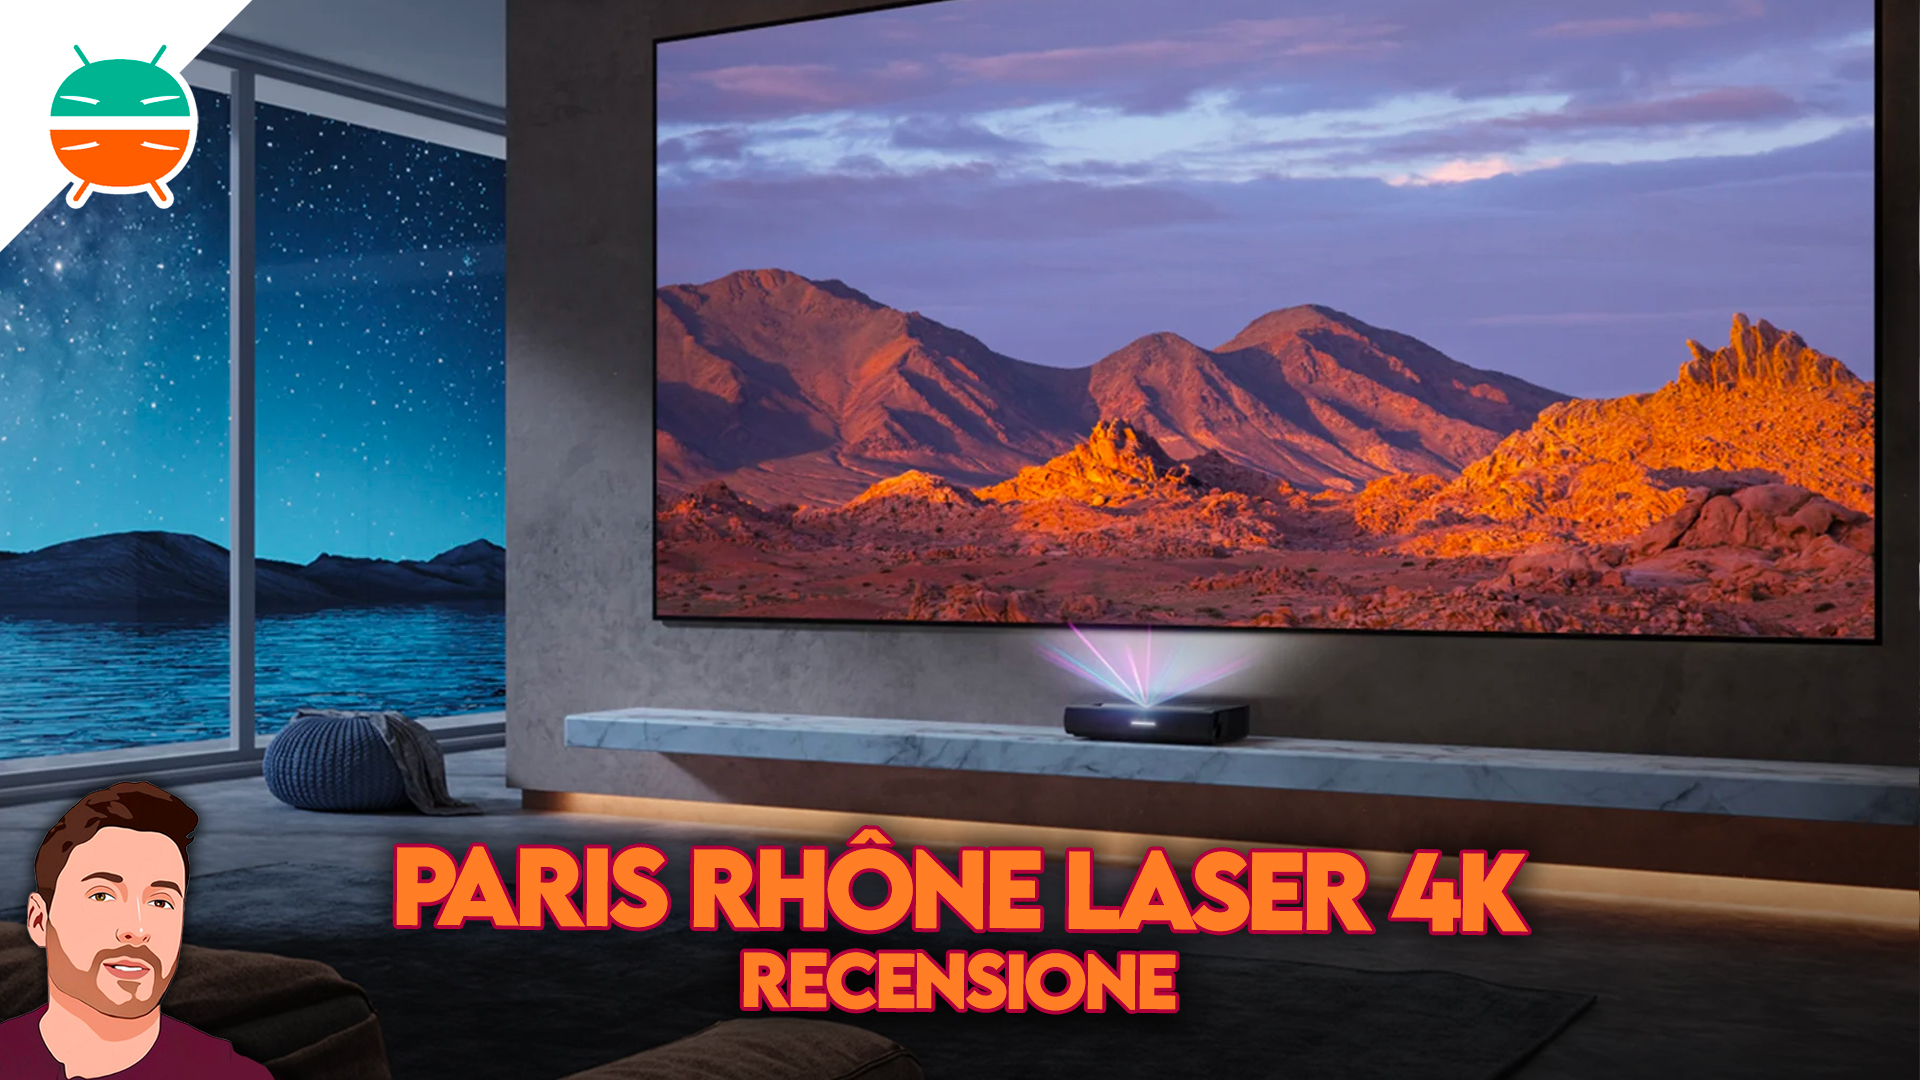 Revue Paris Rhone Laser: projecteur 4K à courte portée - GizChina.it